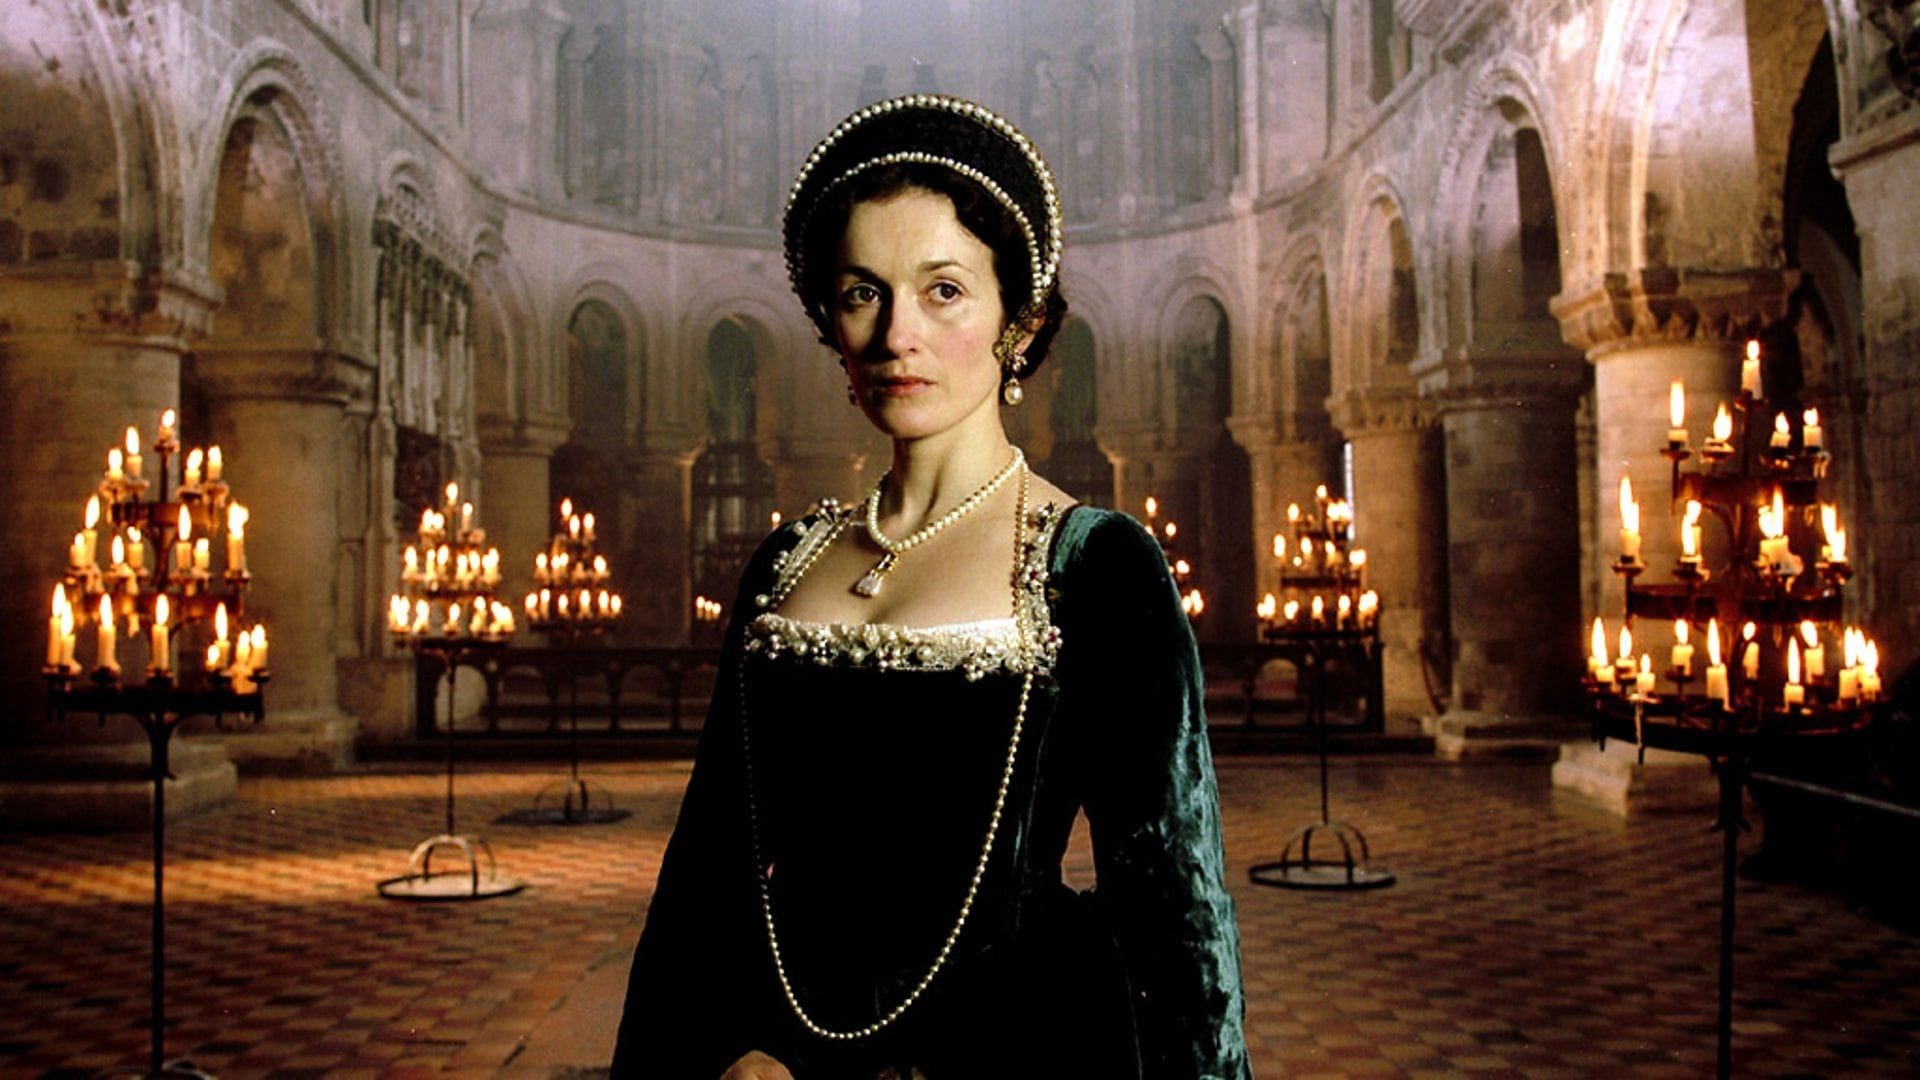 The Last Days of Anne Boleyn background